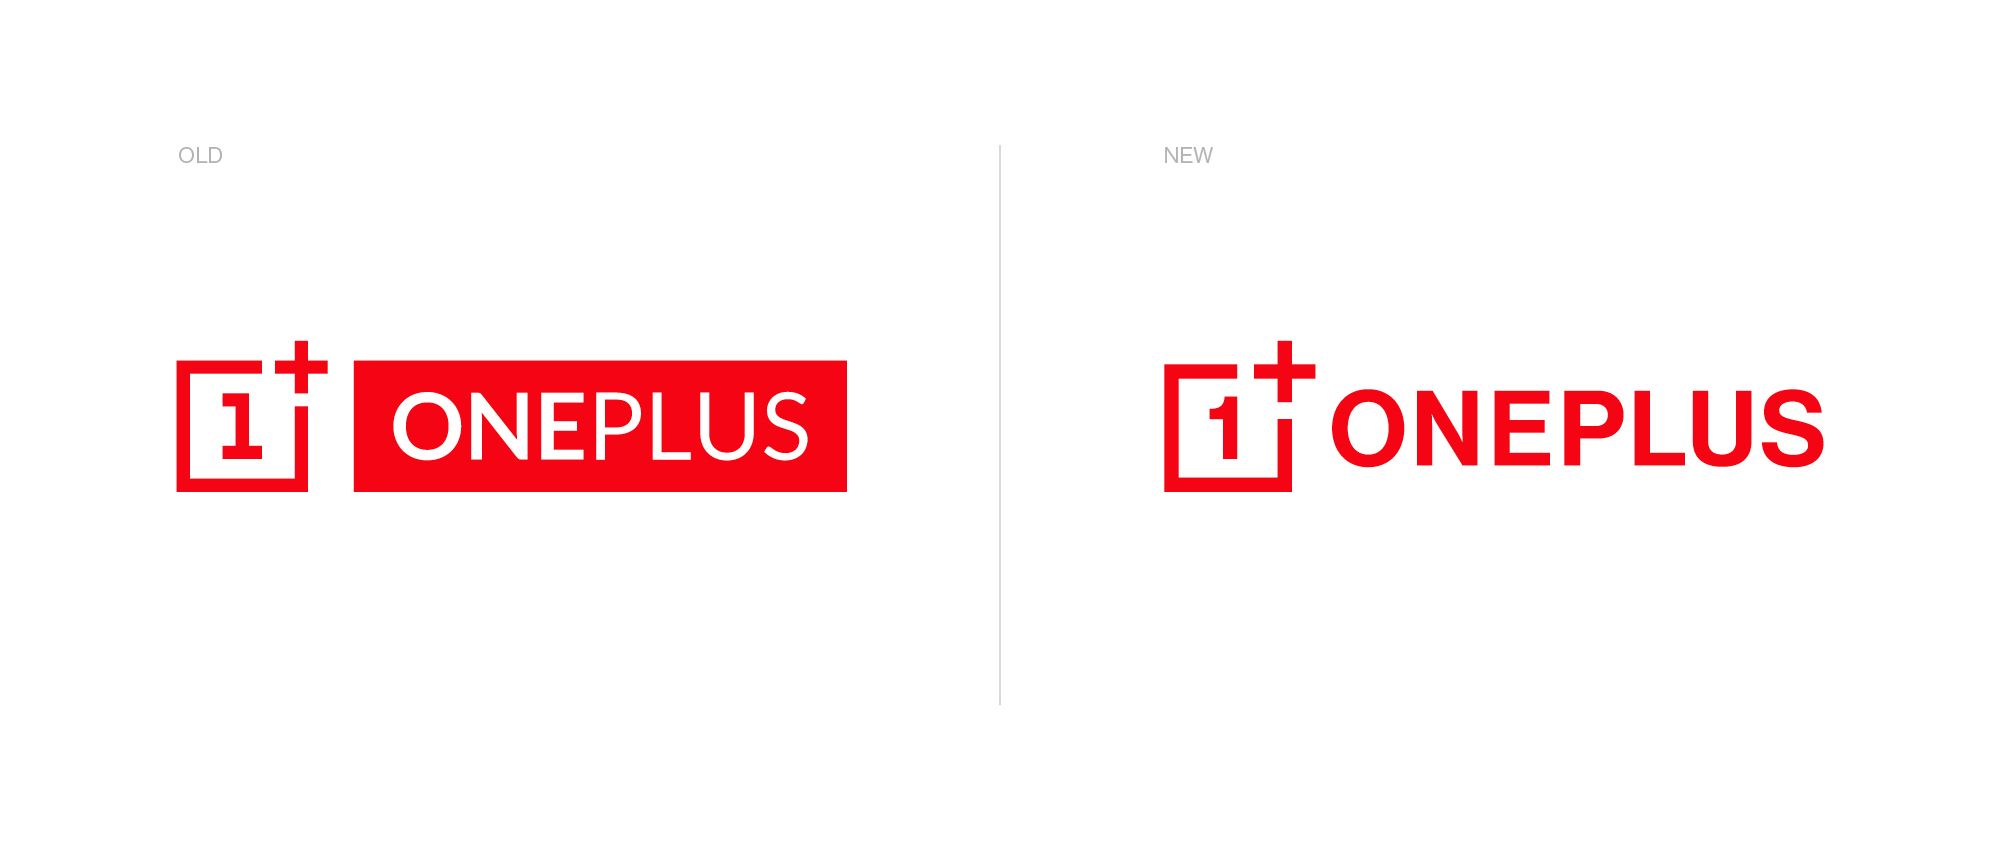 oneplus logo 2020 comparison redesign